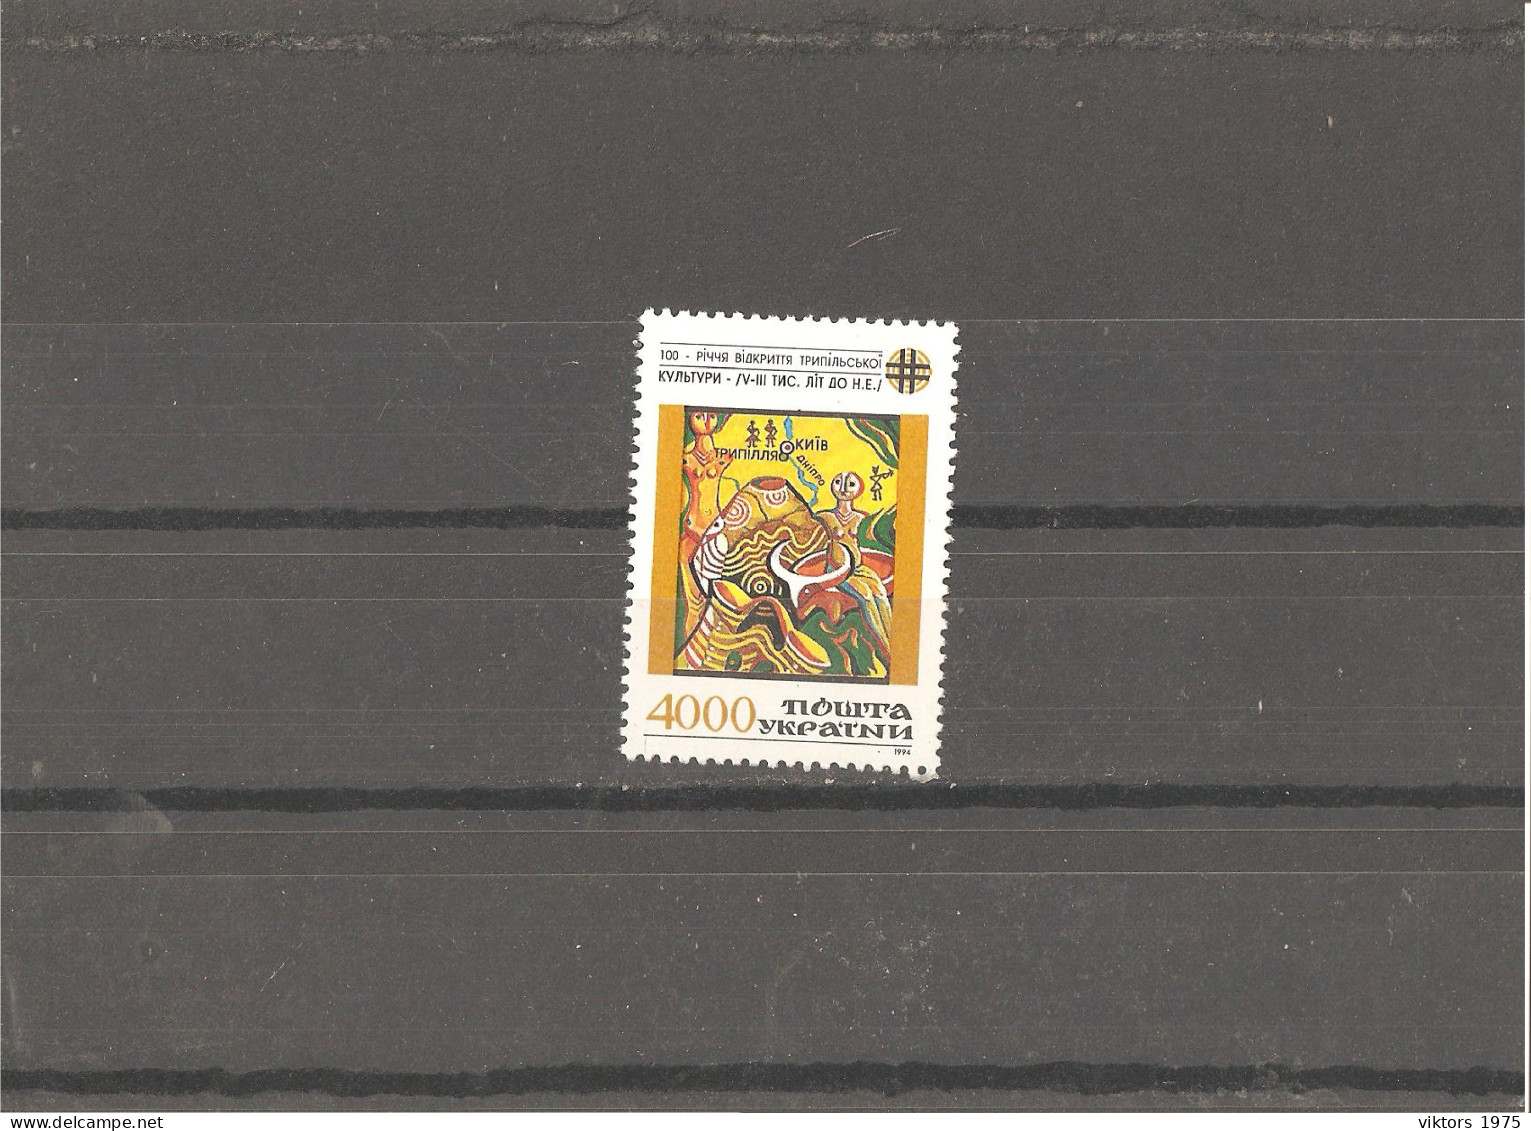 MNH Stamp Nr.129 In MICHEL Catalog - Ukraine